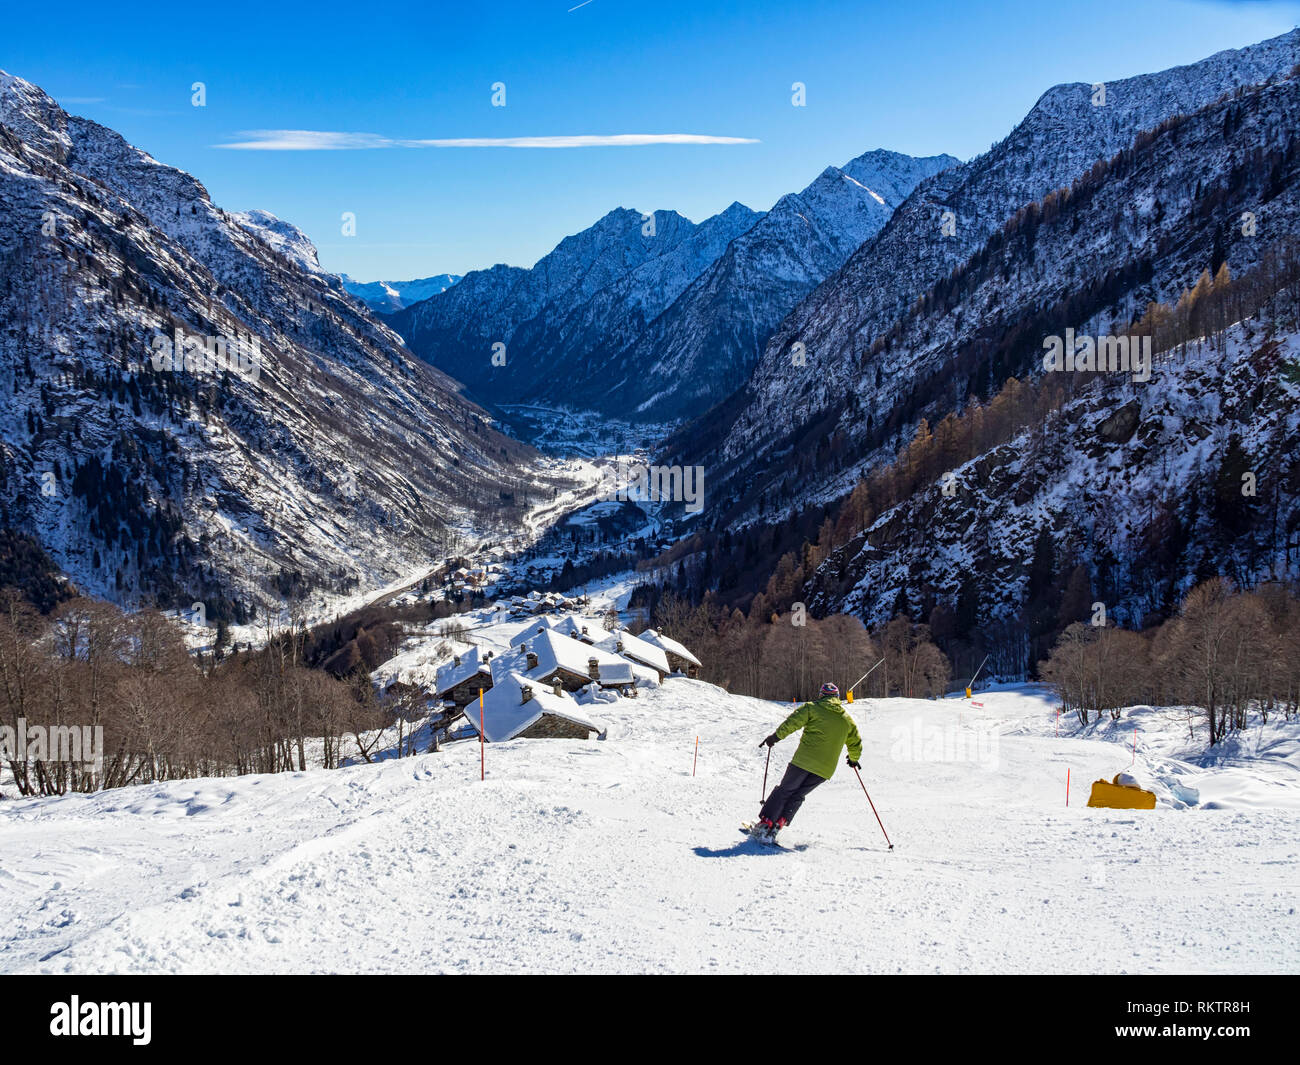 Skieur dans les alpes Banque D'Images